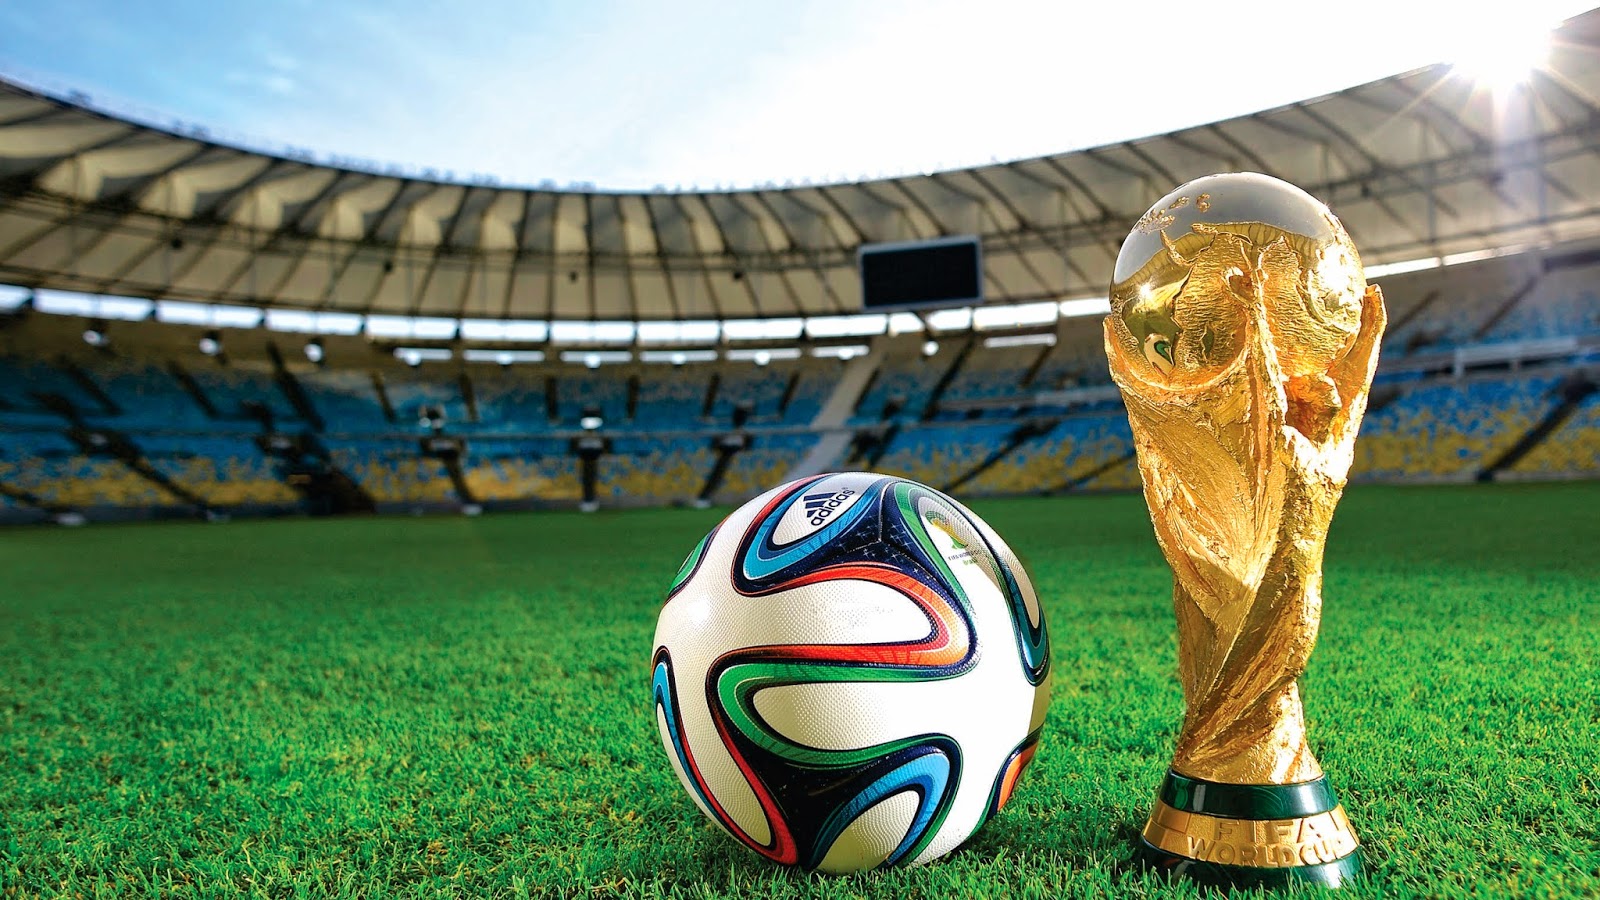 fifa world cup wallpaper,soccer ball,football,ball,sport venue,grass